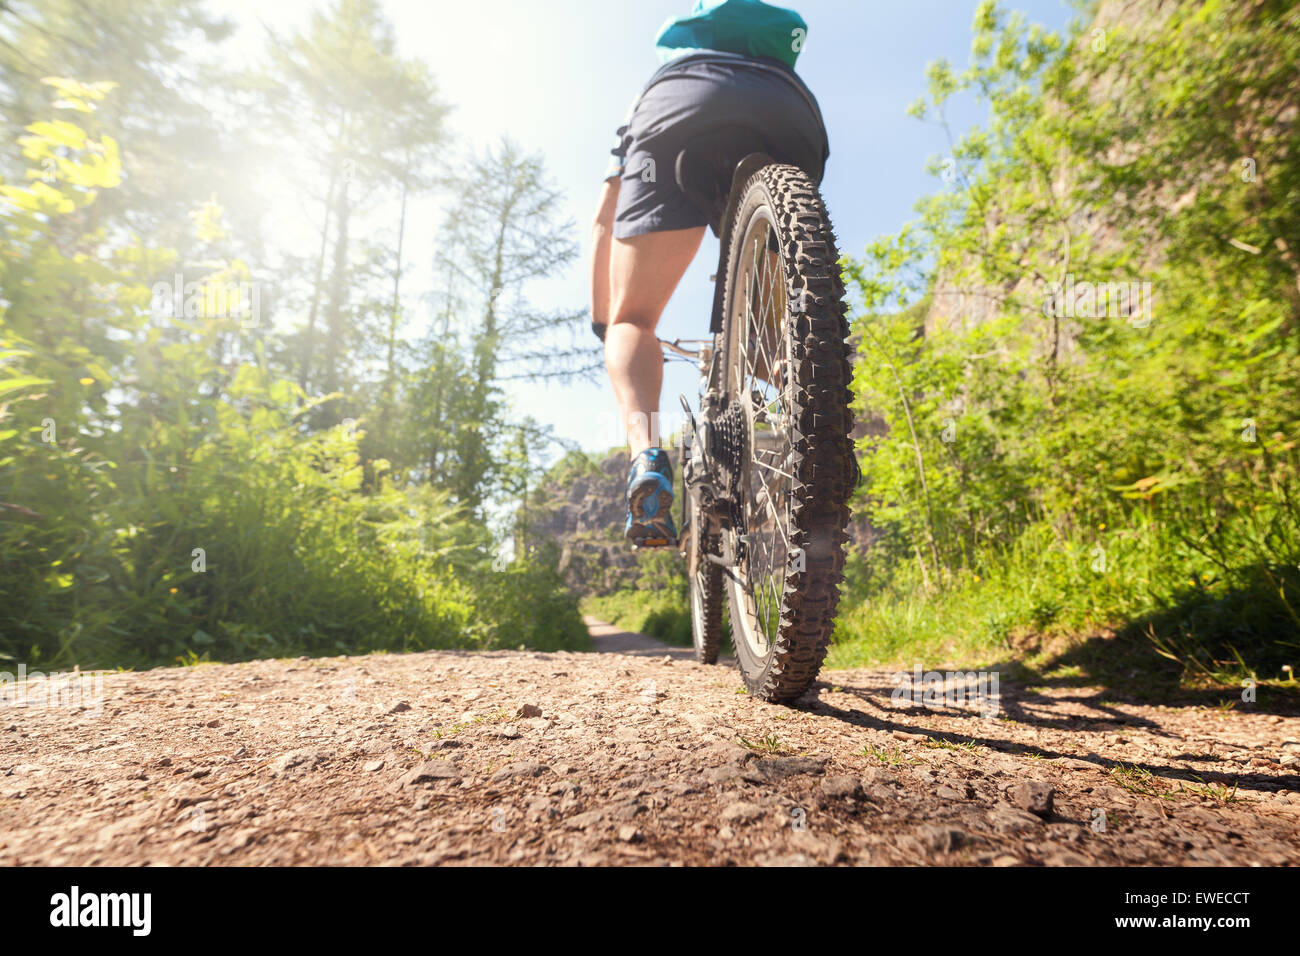 Mountainbiker in Aktion auf einem Wald-Trail-Konzept für gesunden Lebensstil, Bewegung und Extremsport Stockfoto